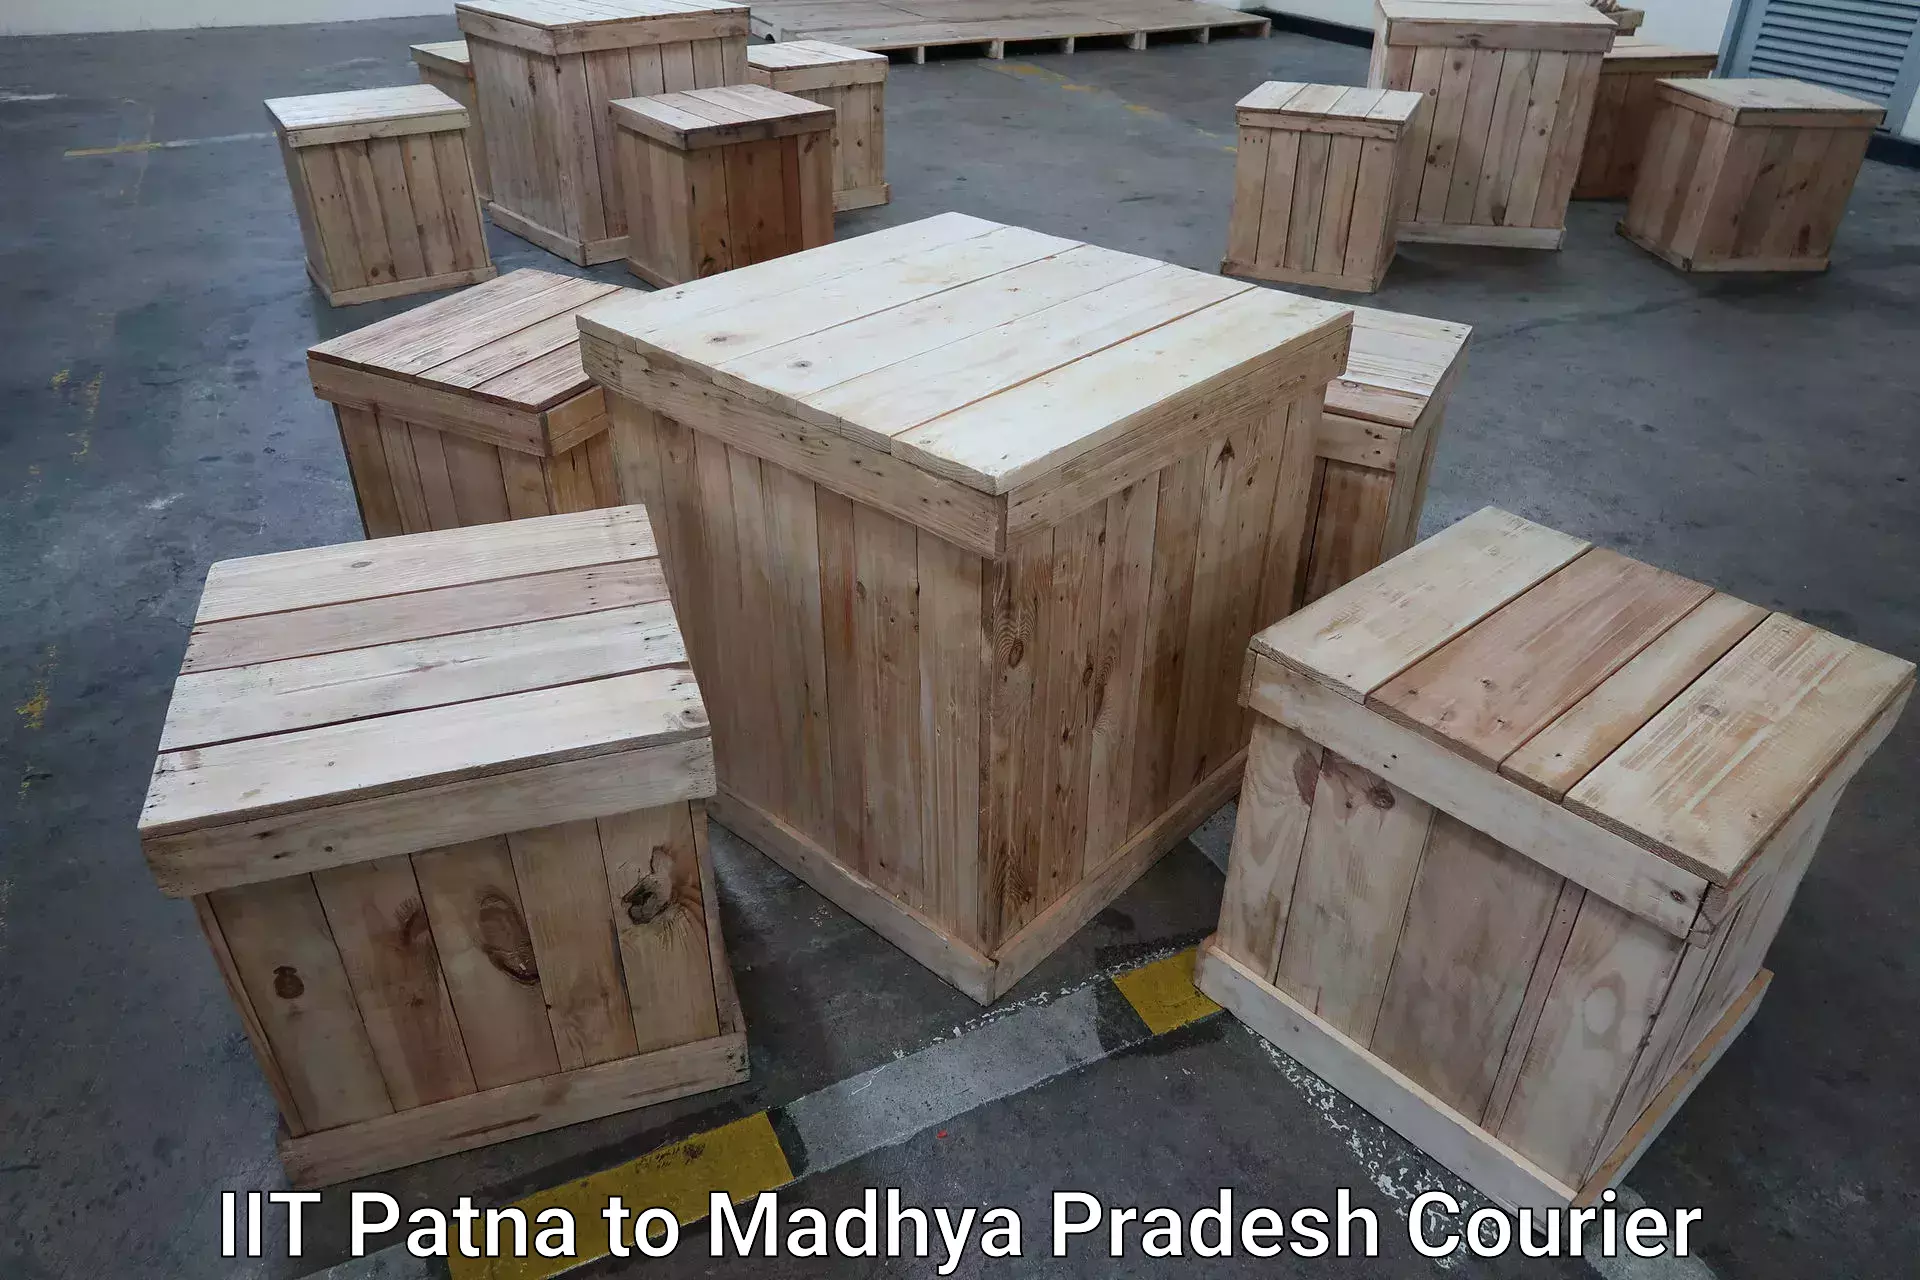 Baggage transport scheduler IIT Patna to Madhya Pradesh